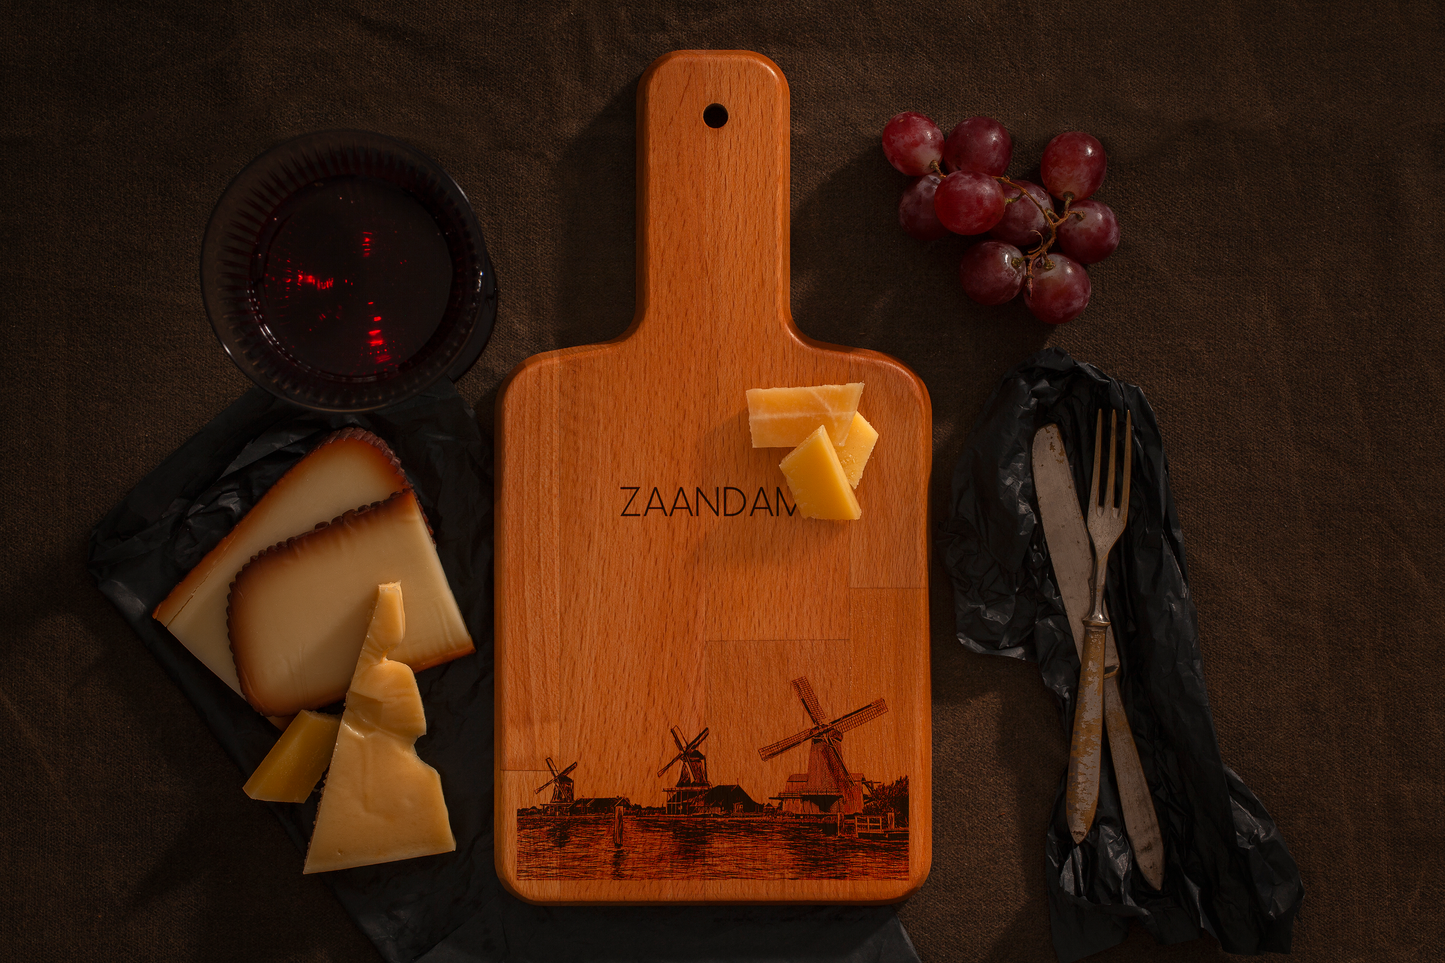 Zaandam, Zaanse Schans, cheese board, with cheese